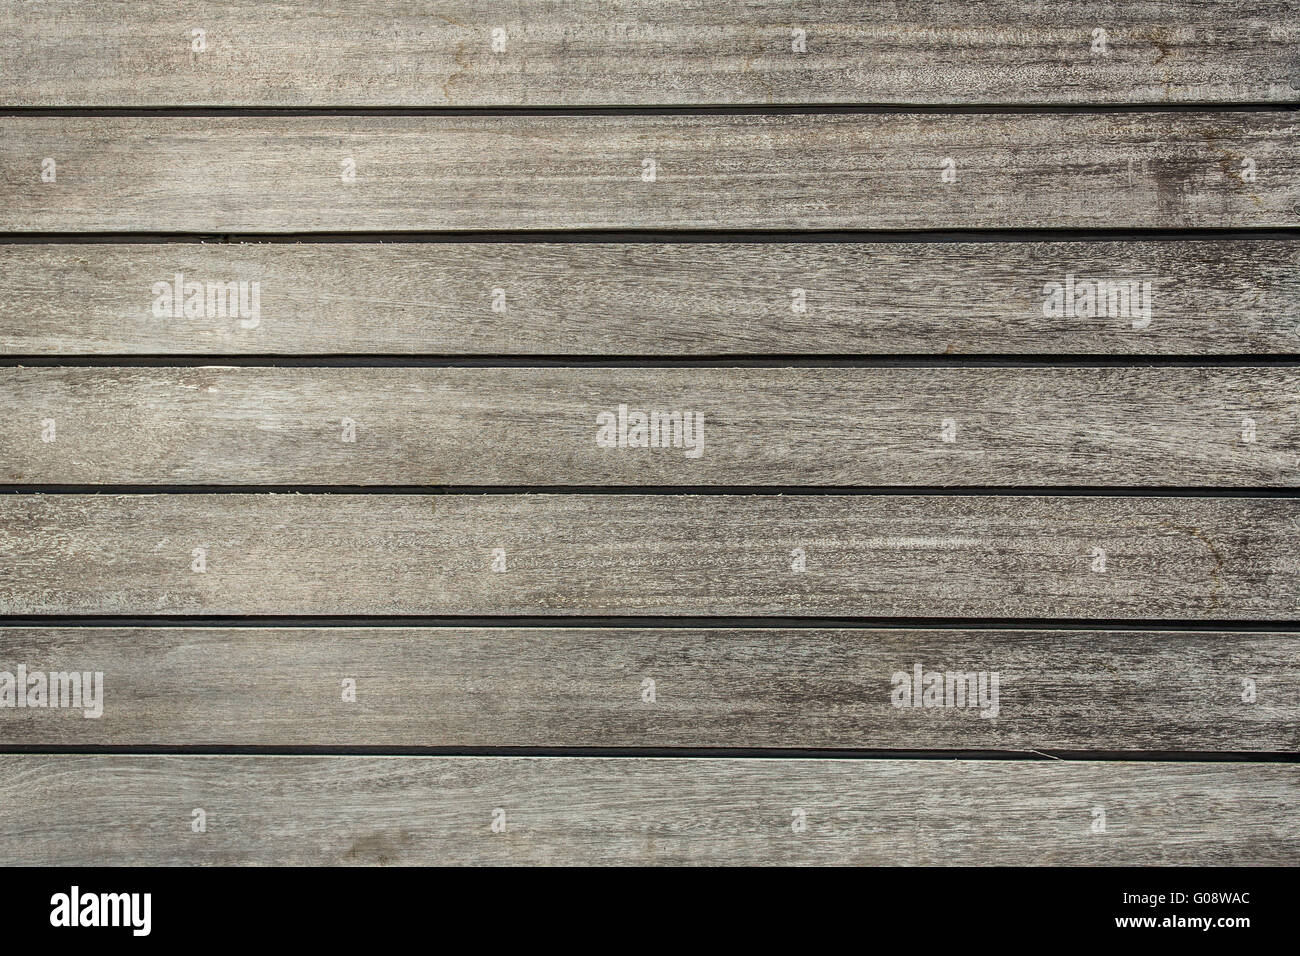 Les planches de bois background close-up Banque D'Images